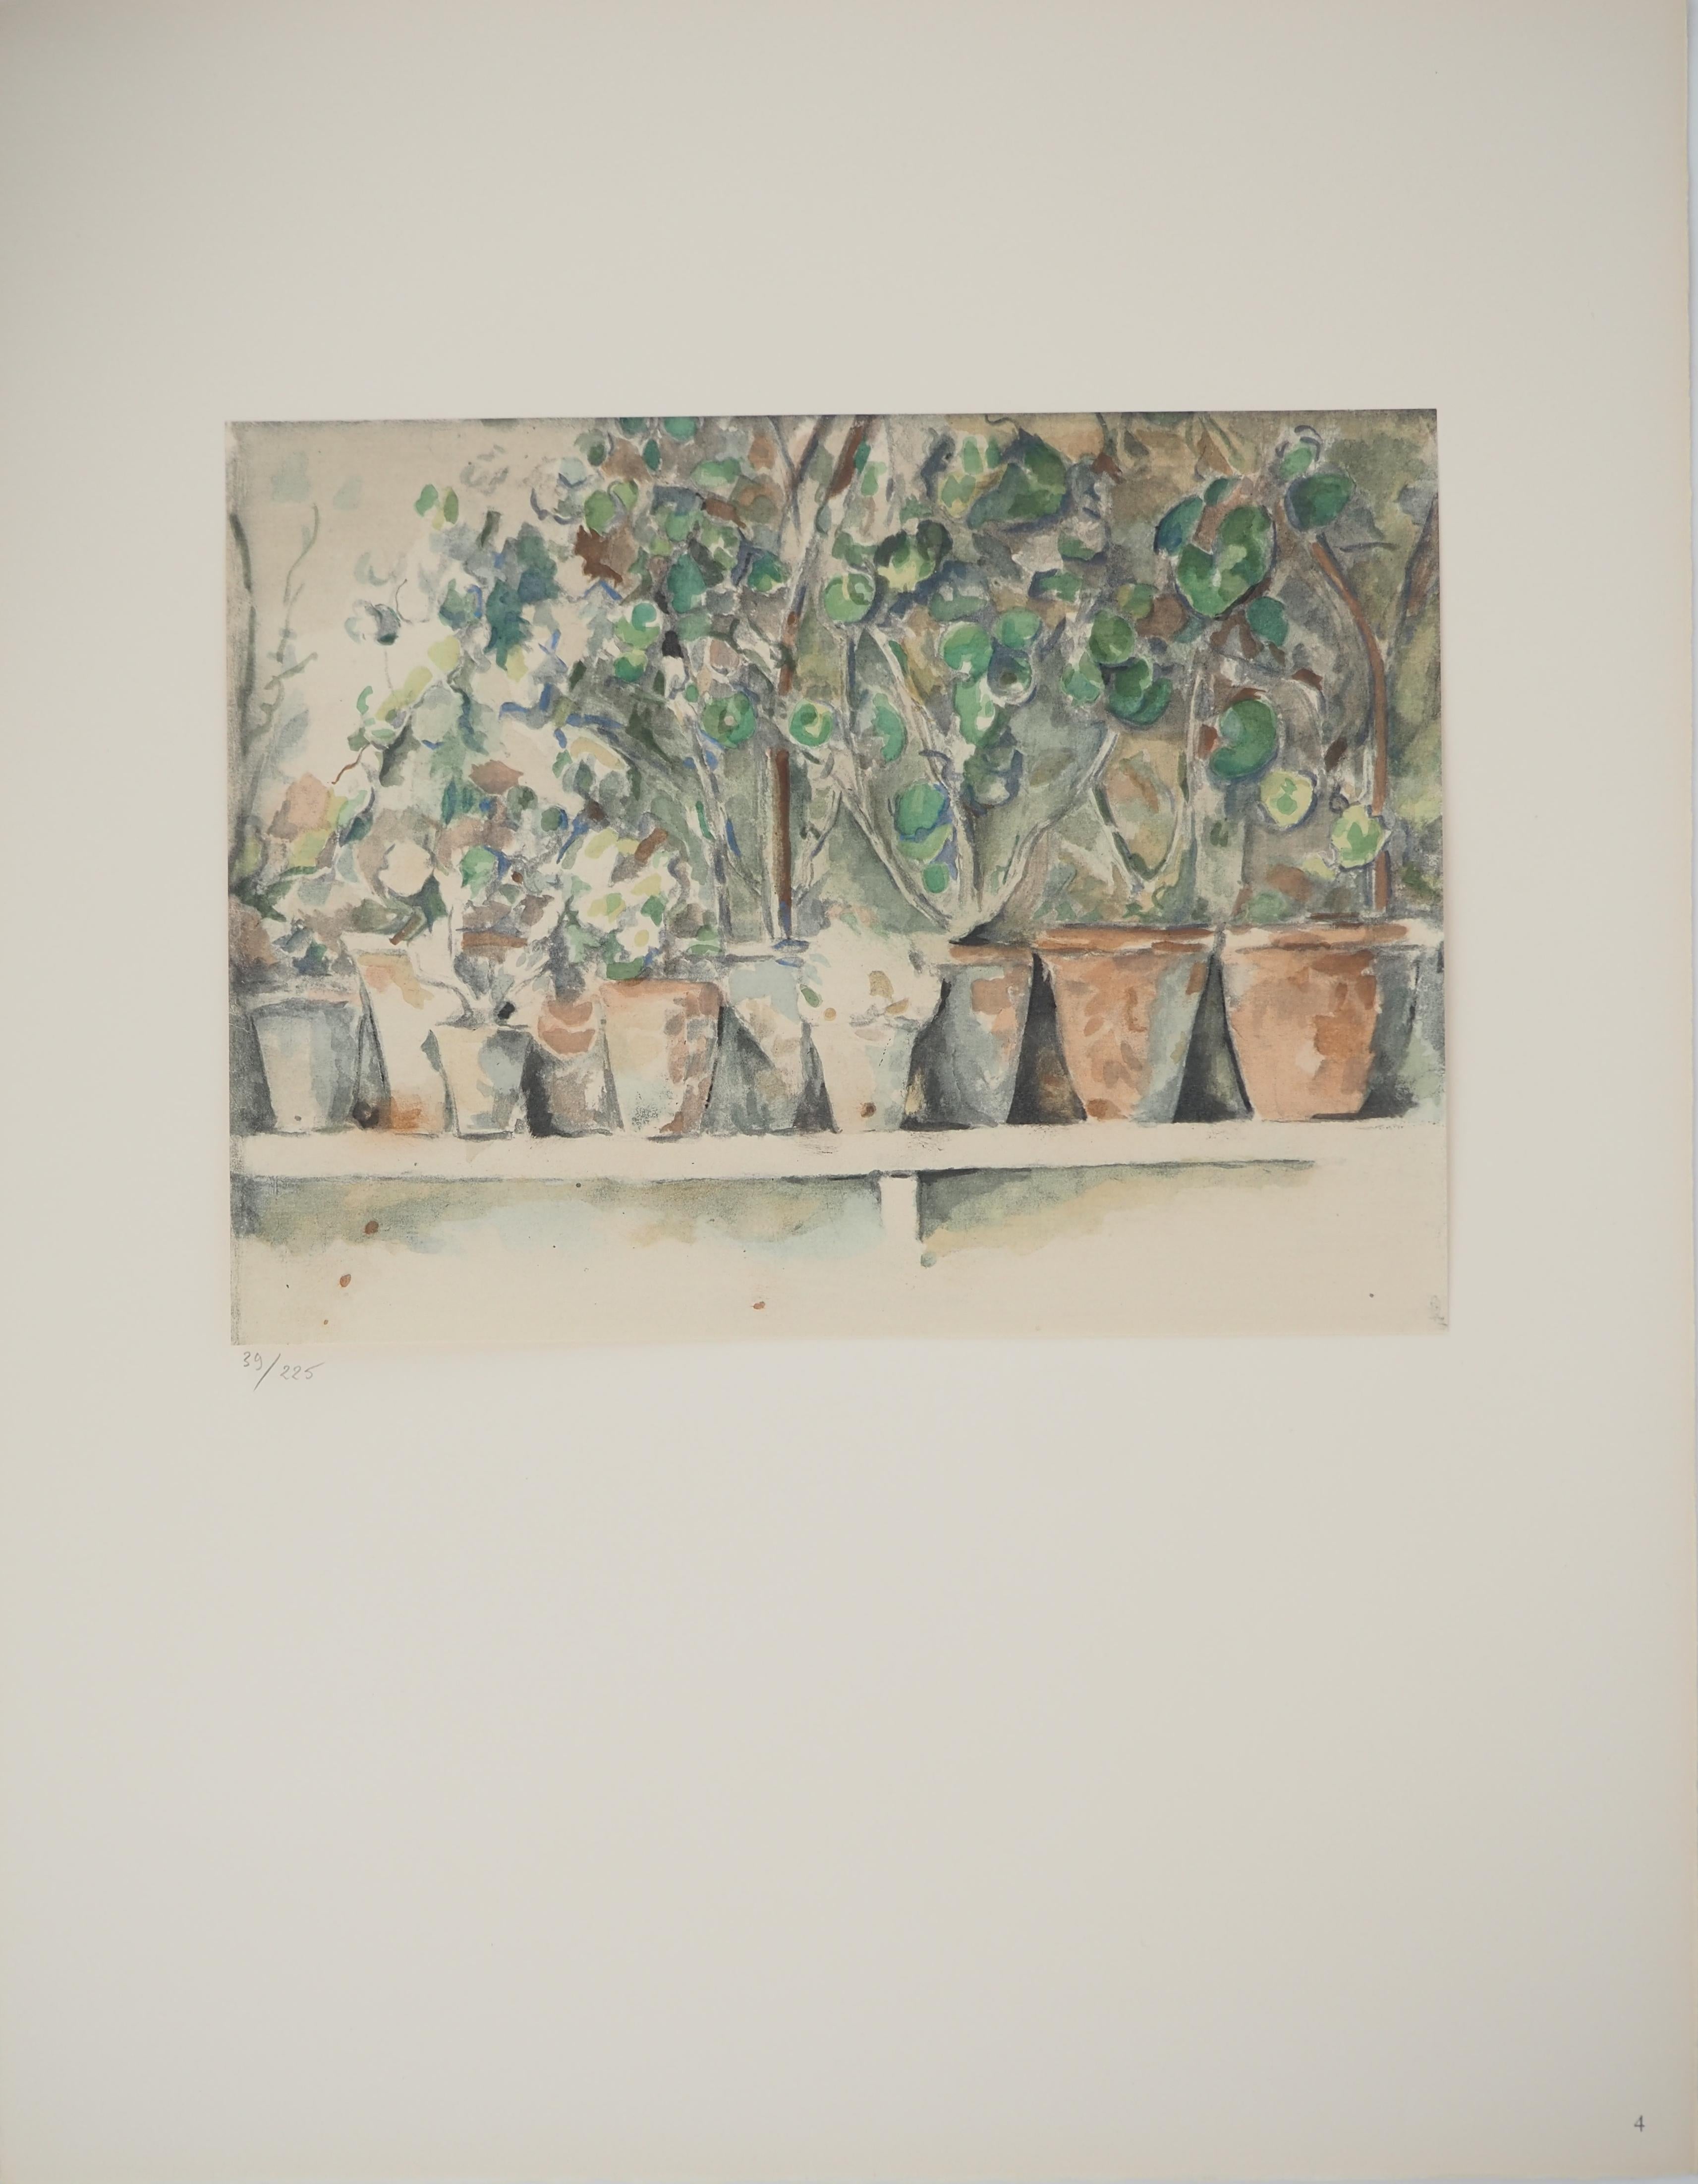 pots de Geranium, lithographie, 1971 - Print de Paul Cézanne